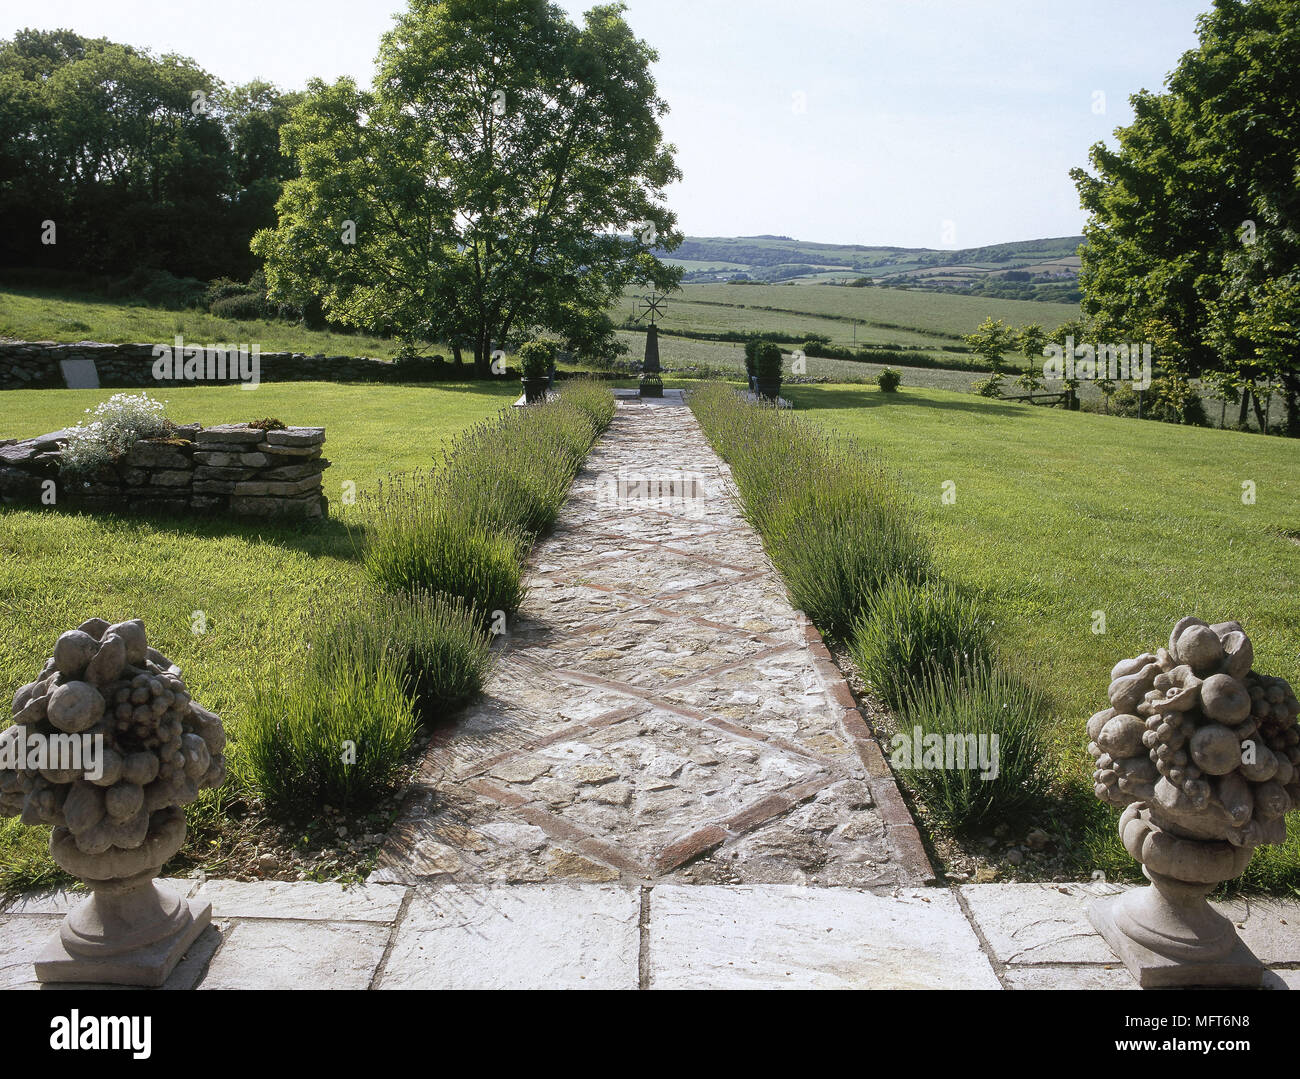 Country garden stone percorso prati vista di aperta campagna percorsi giardini Foto Stock